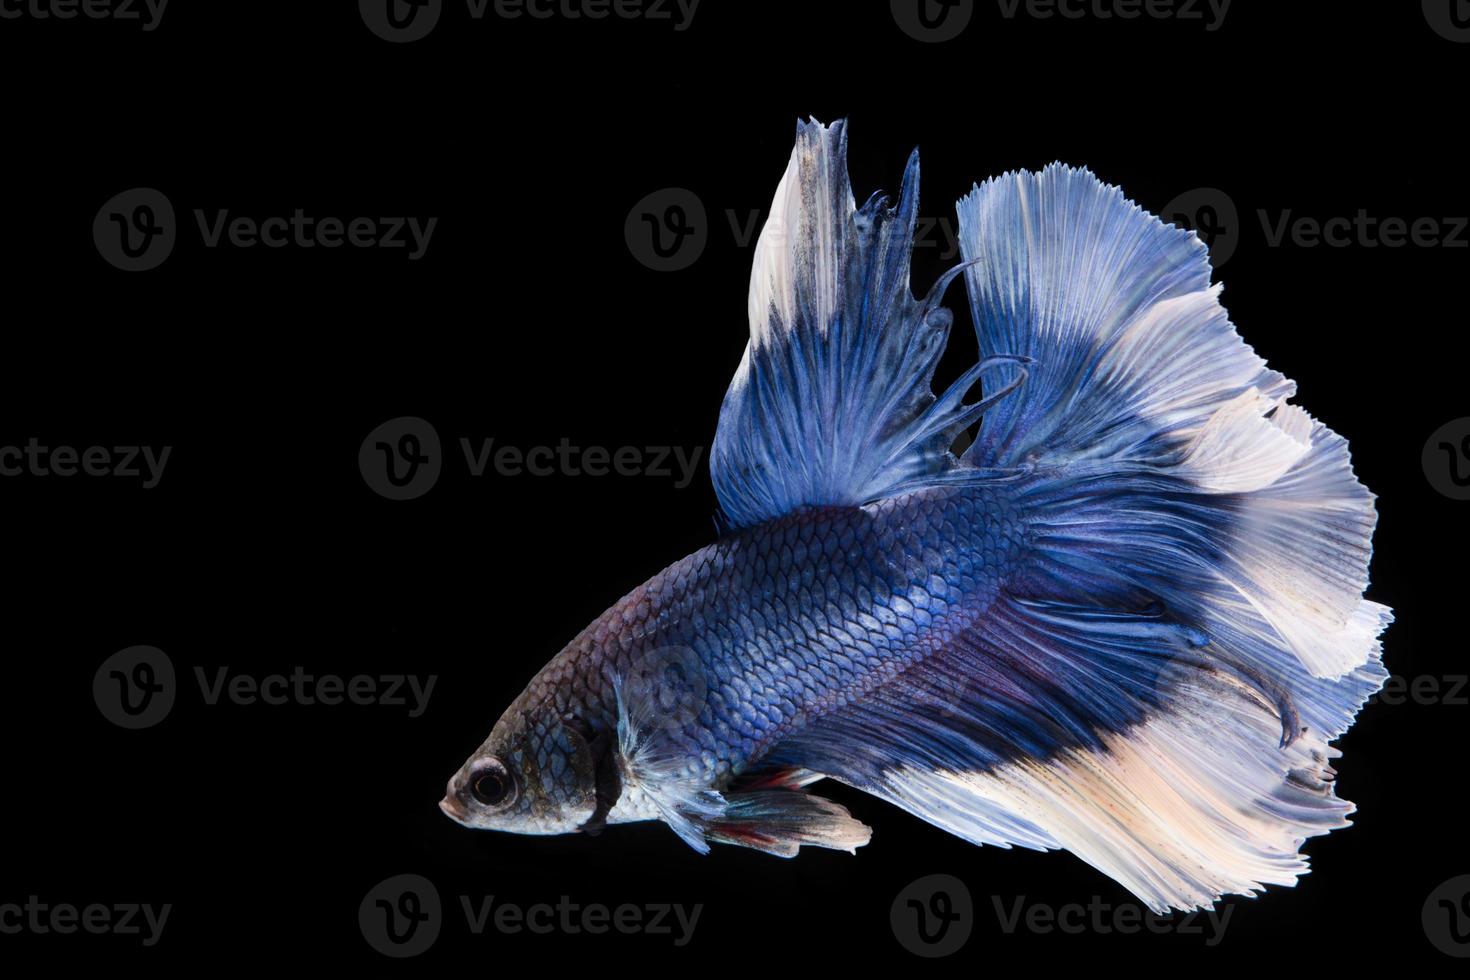 pez betta azul y blanco, pez luchador siamés sobre fondo negropez betta azul y blanco, pez luchador siamés sobre fondo negro foto